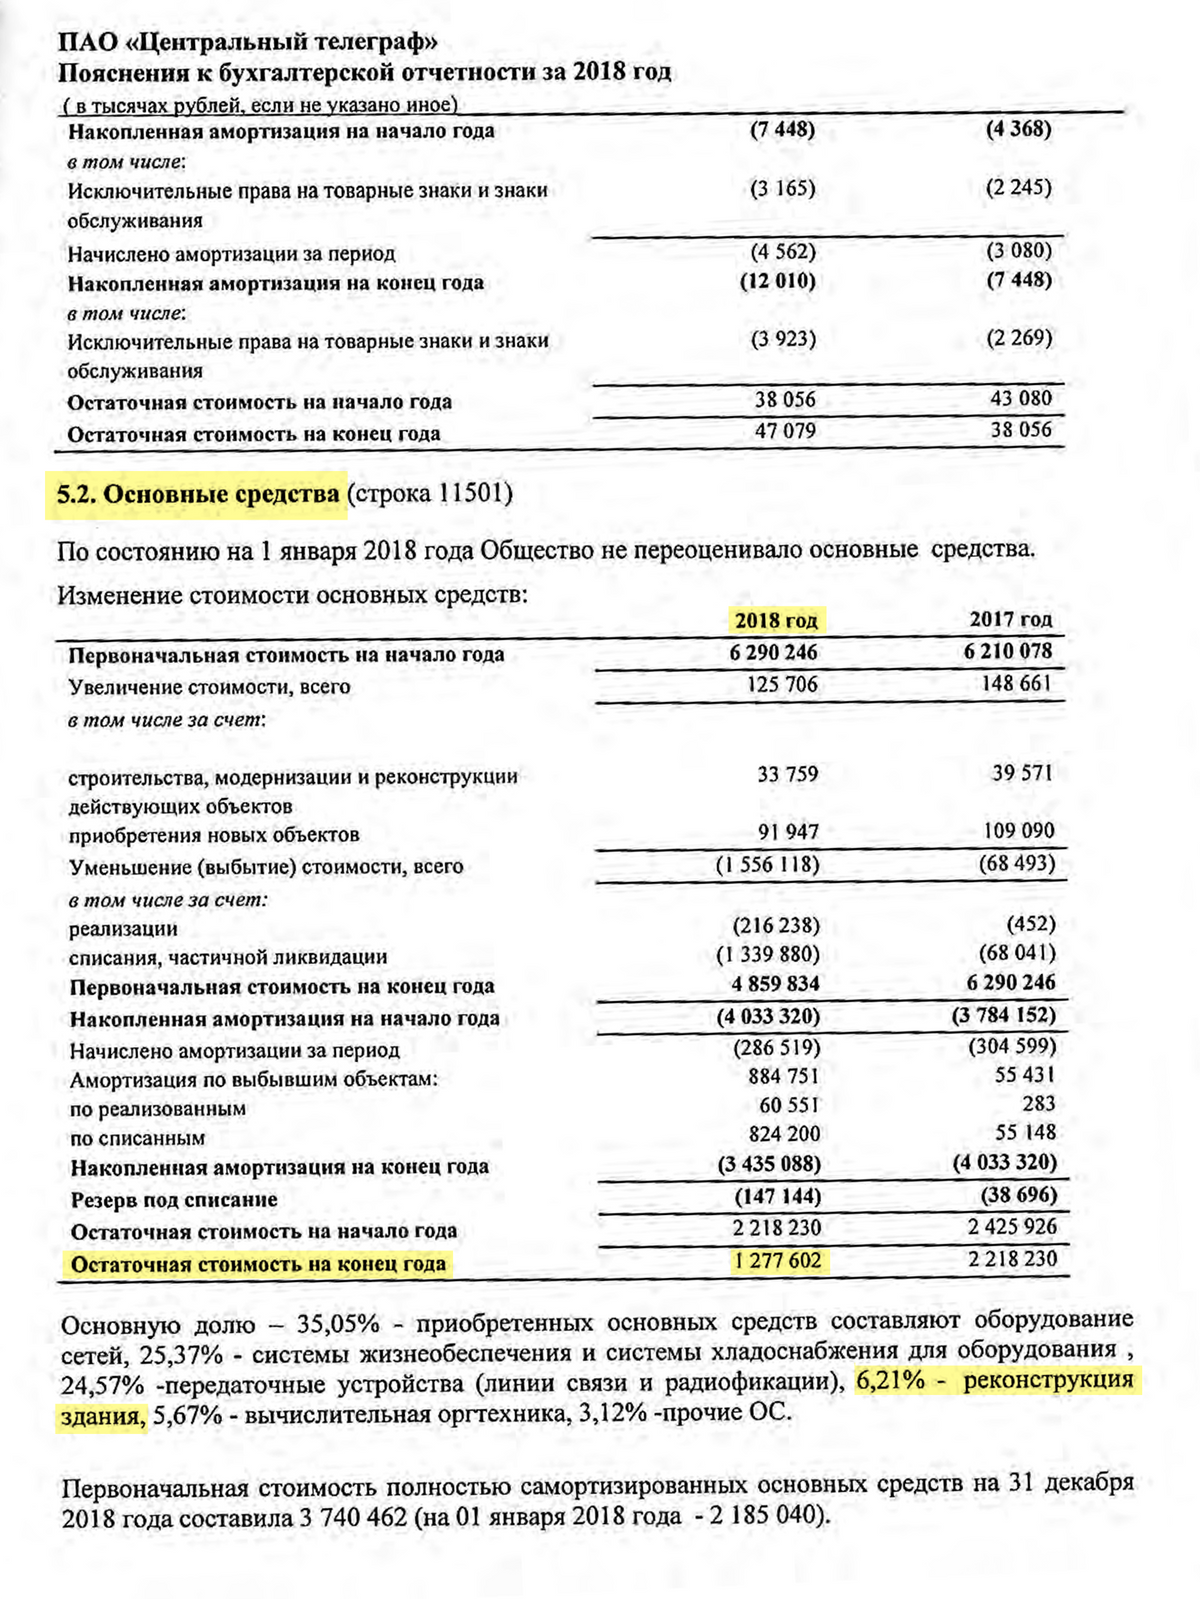 Приблизительная стоимость недвижимости «Центрального телеграфа» составляла: 1 277 602 000 <span class=ruble>Р</span>&nbsp;× 6,21% = 79 339 000&nbsp;<span class=ruble>Р</span>, или 79&nbsp;млн рублей. Компания продала недвижимость за 3,5&nbsp;млрд рублей. Разницу записали в отчете о прибылях и убытках, из-за чего выросла чистая прибыль и размер дивиденда. Не было&nbsp;бы продажи — не было&nbsp;бы крупных дивидендов. Источник:&nbsp;финансовая отчетность «Центрального телеграфа» по РСБУ, стр.&nbsp;18